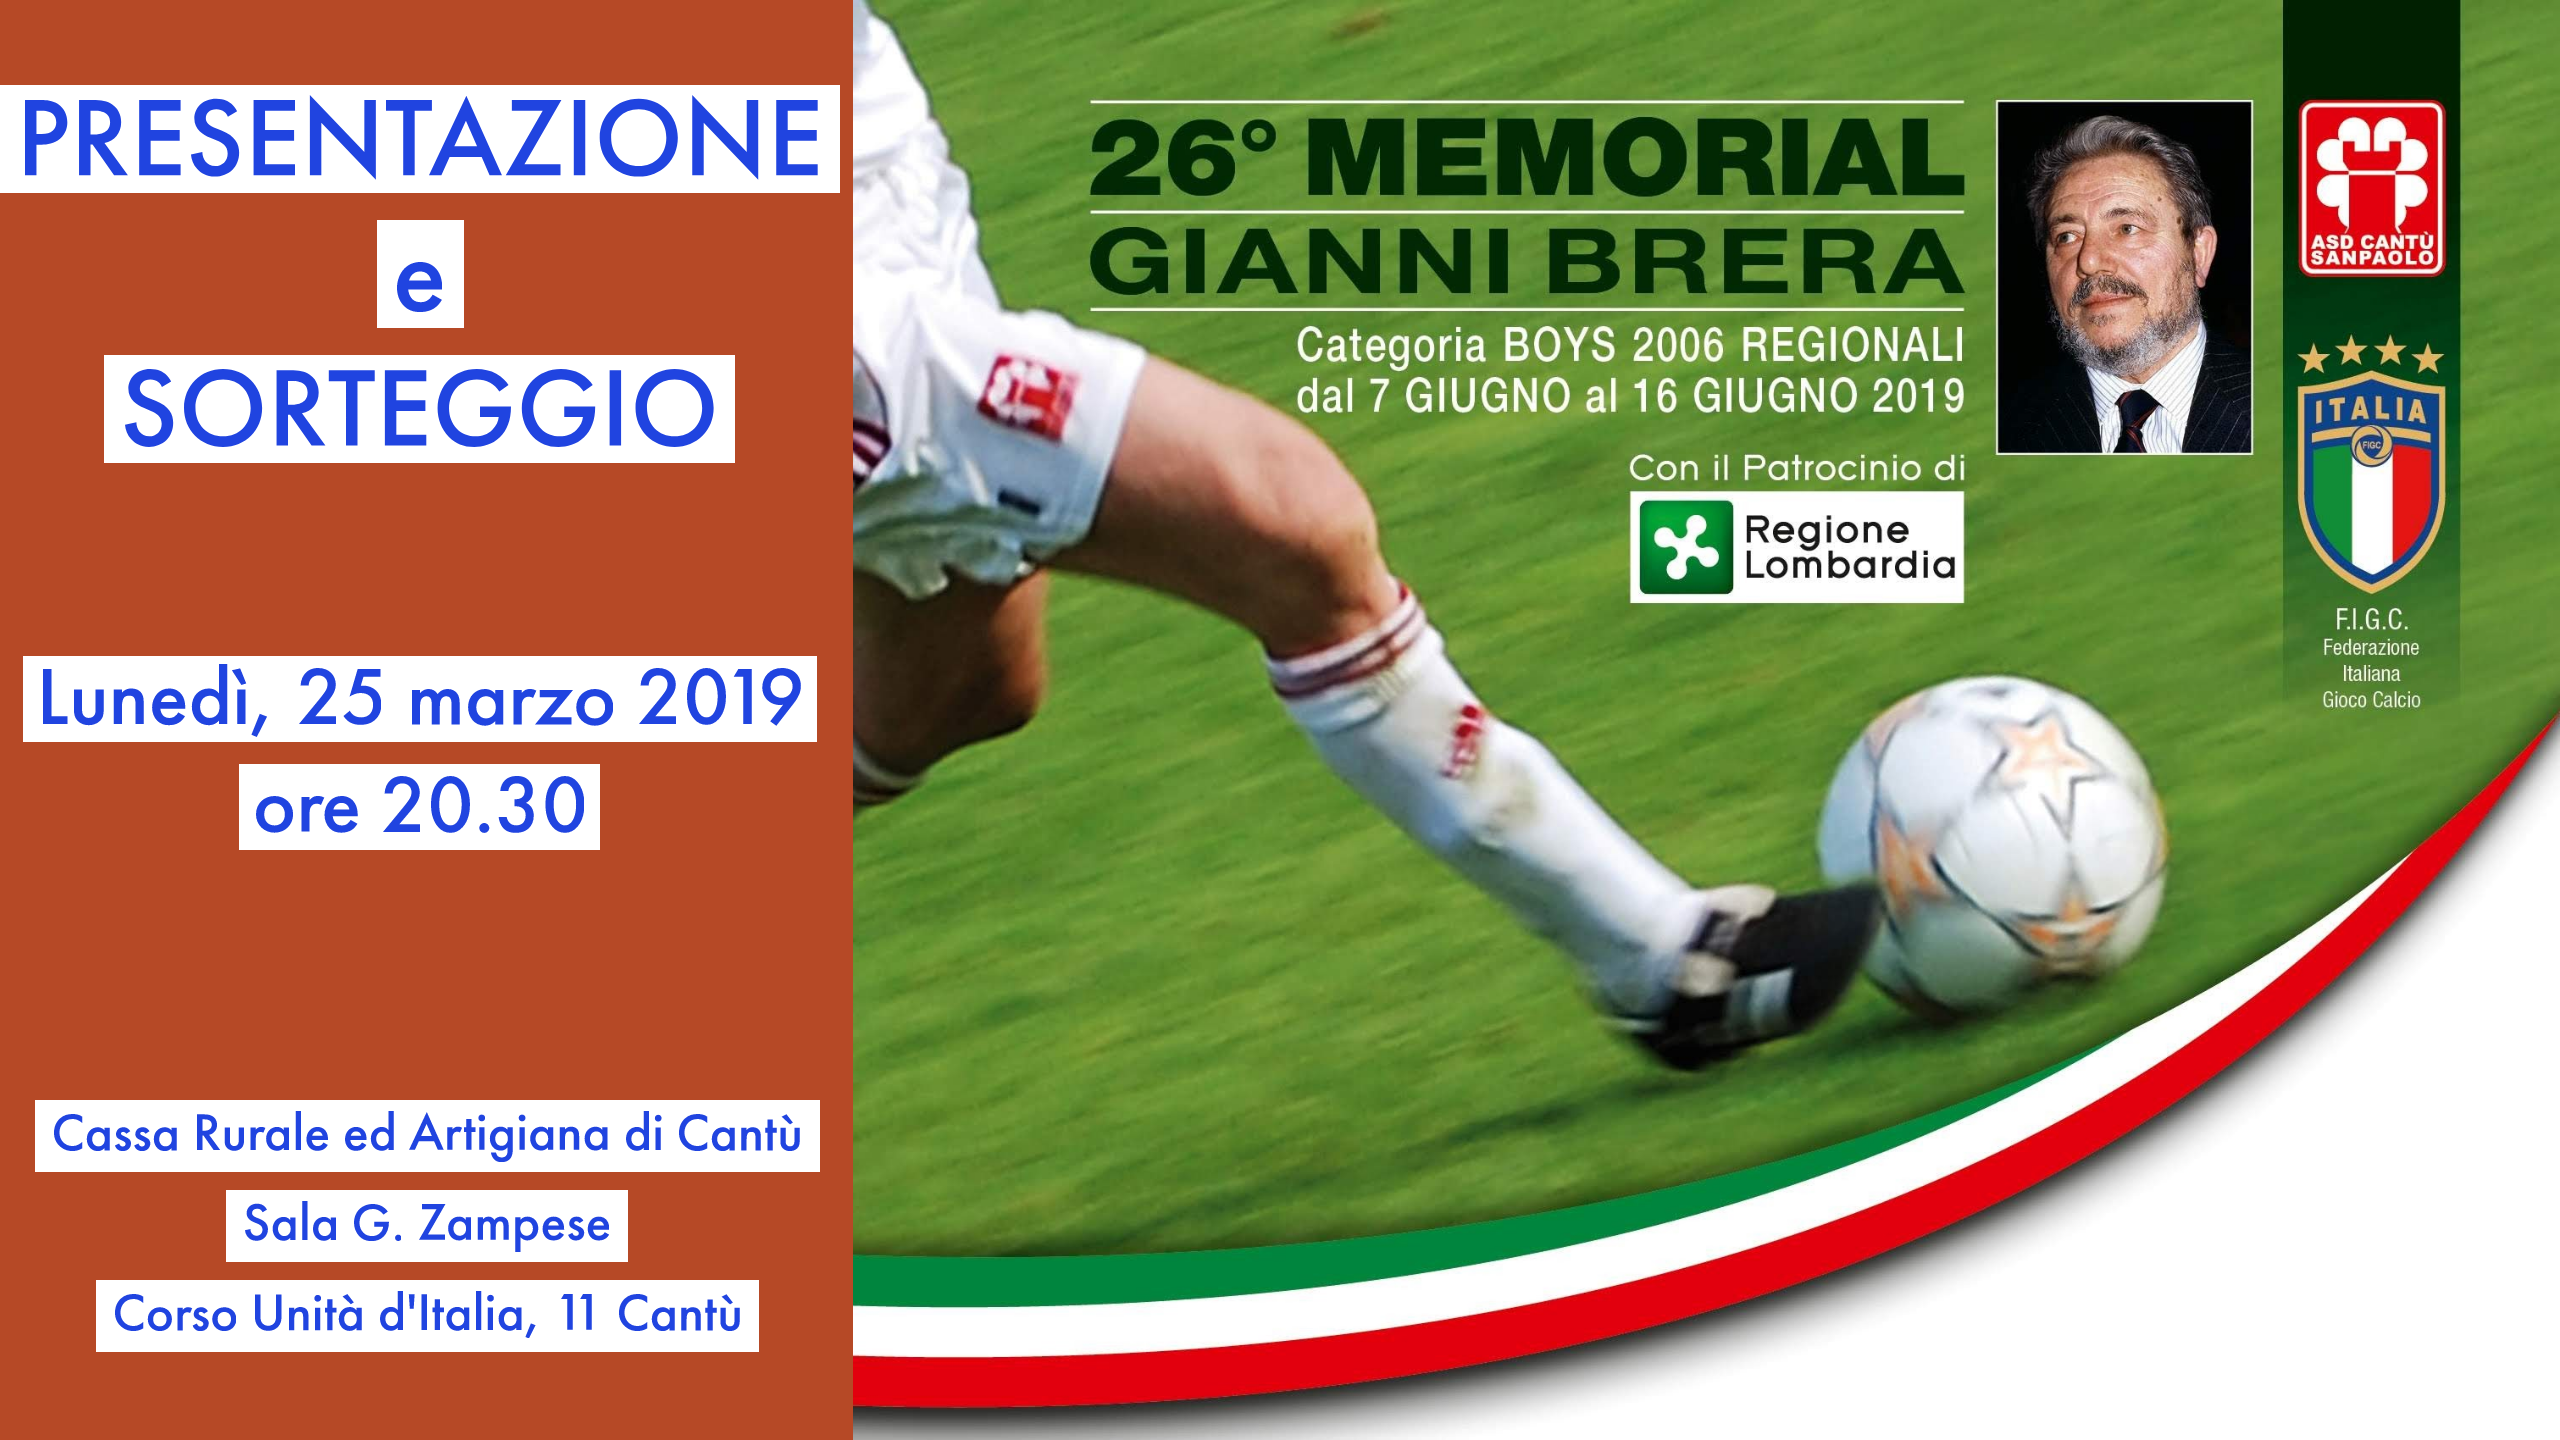 Presentazione 26° Memorial “Gianni Brera”